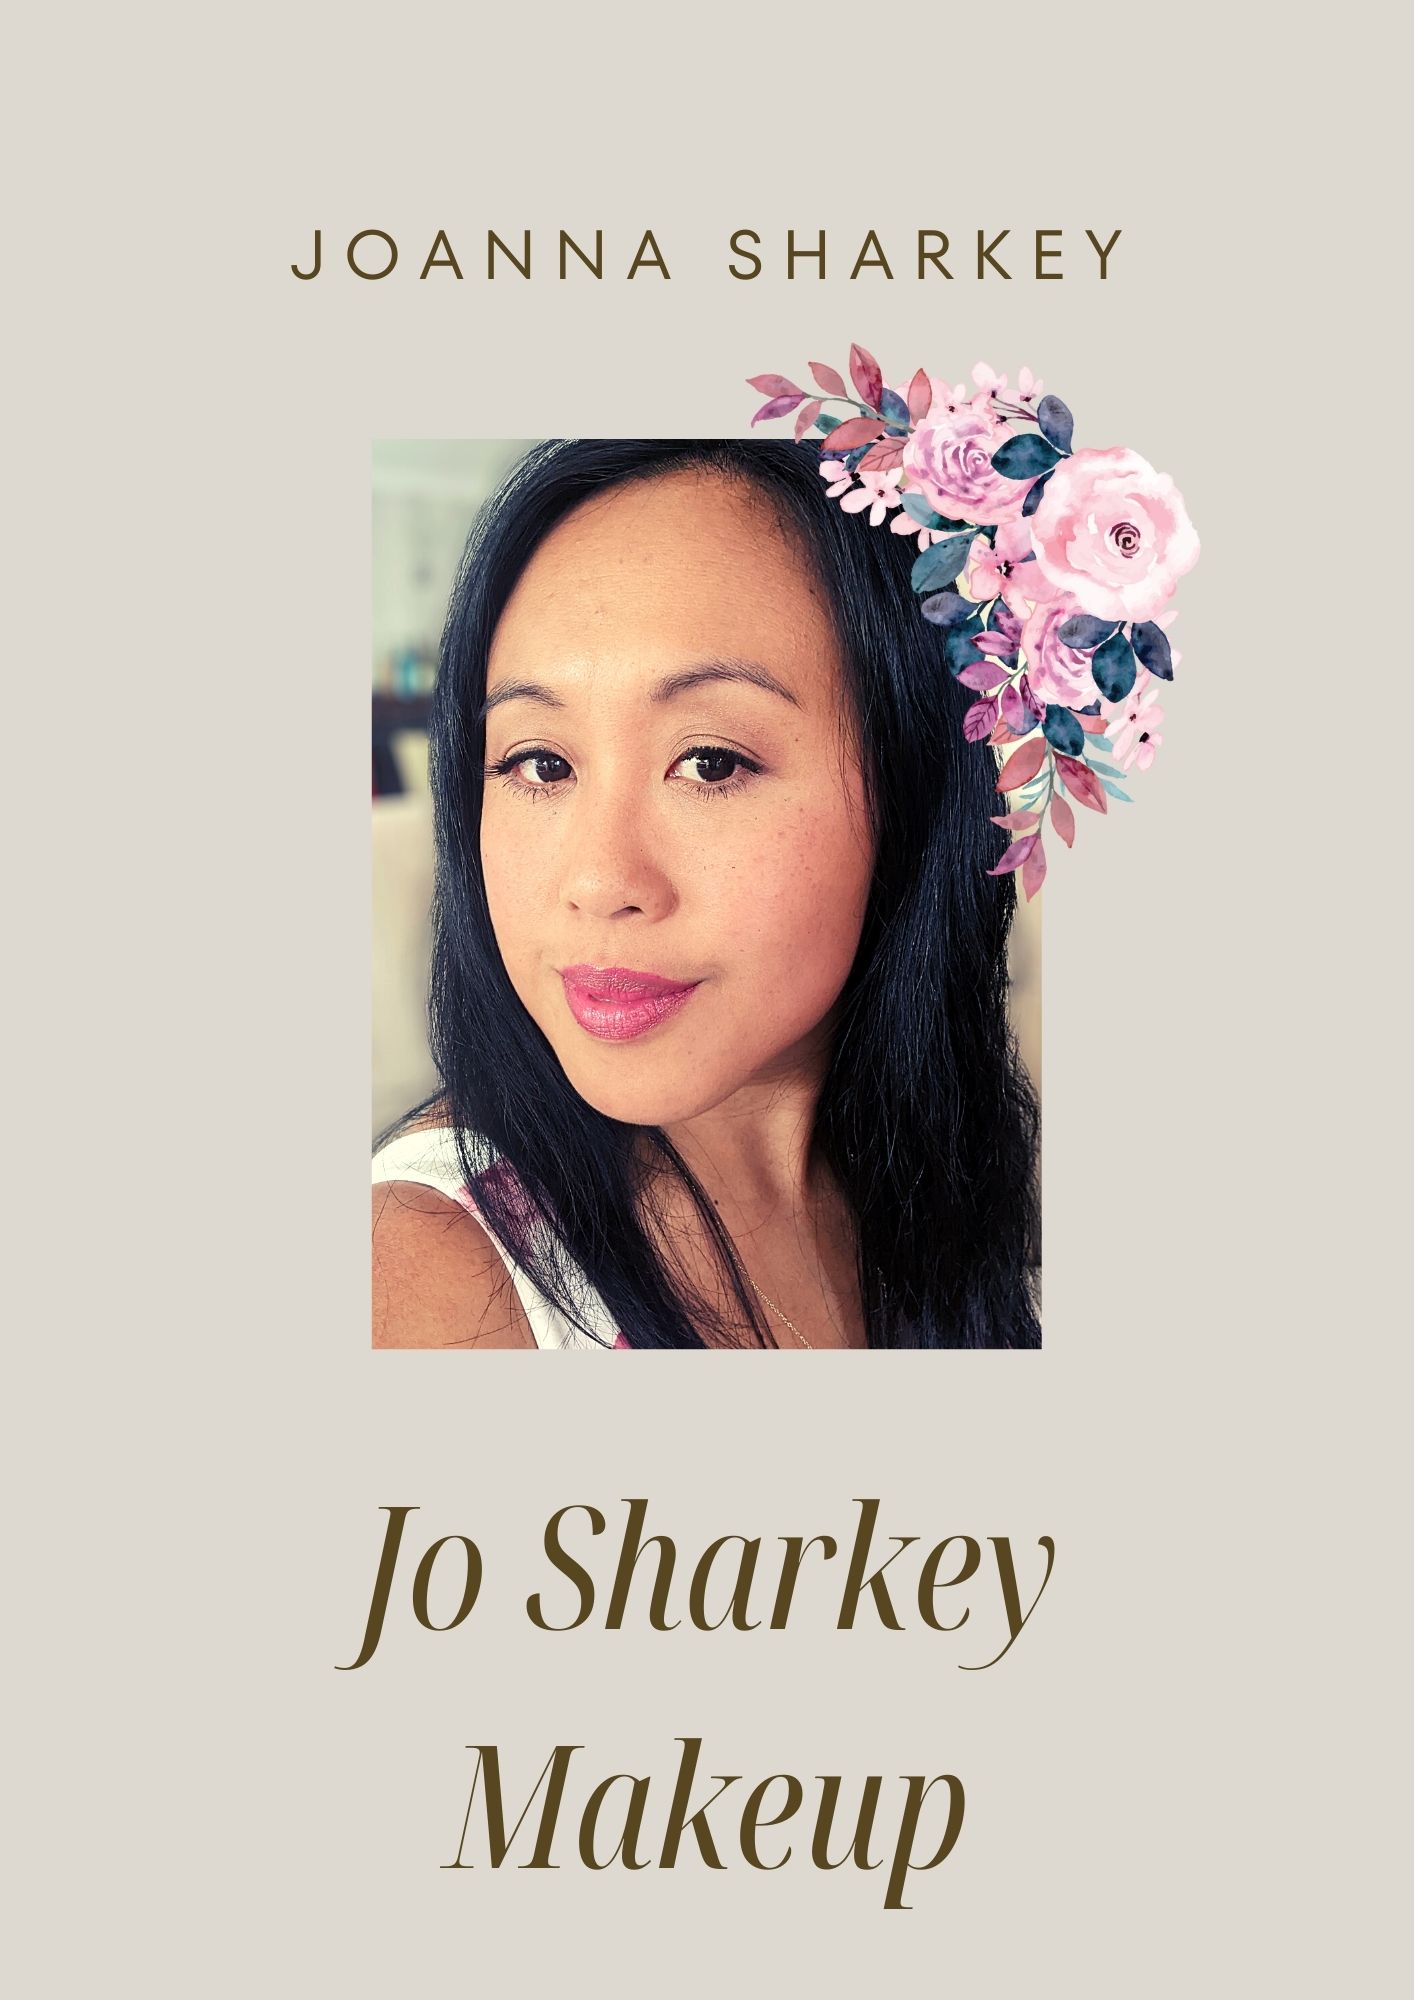 Image of Key Person Joanna Sharkey